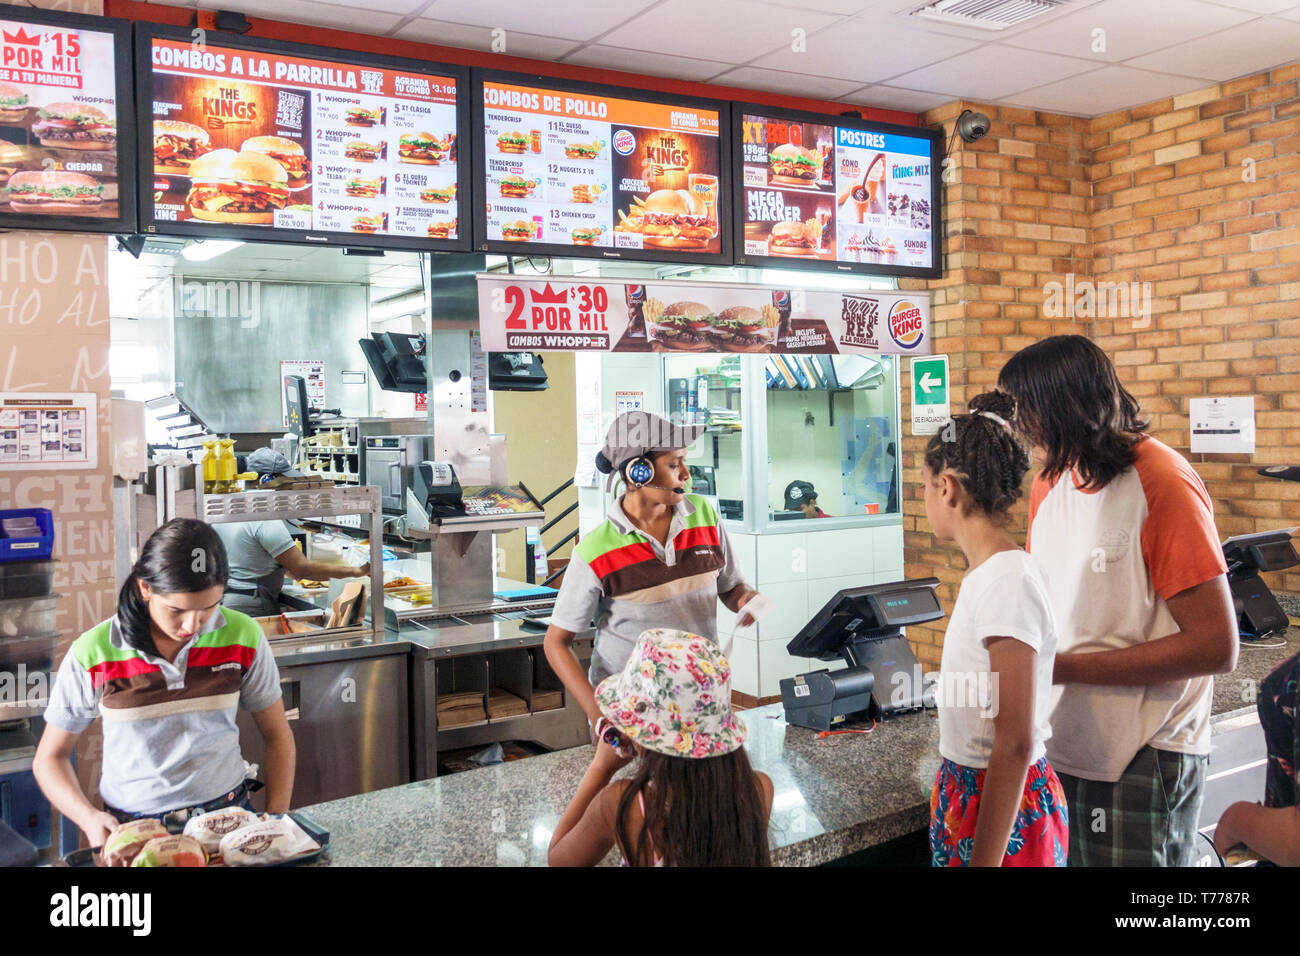 Cartagena Colombia,Bocagrande,Burger King,comida rápida,hamburguesas,restaurantes comida comedor cafés,interior,mostrador,clientes,cajero Foto de stock